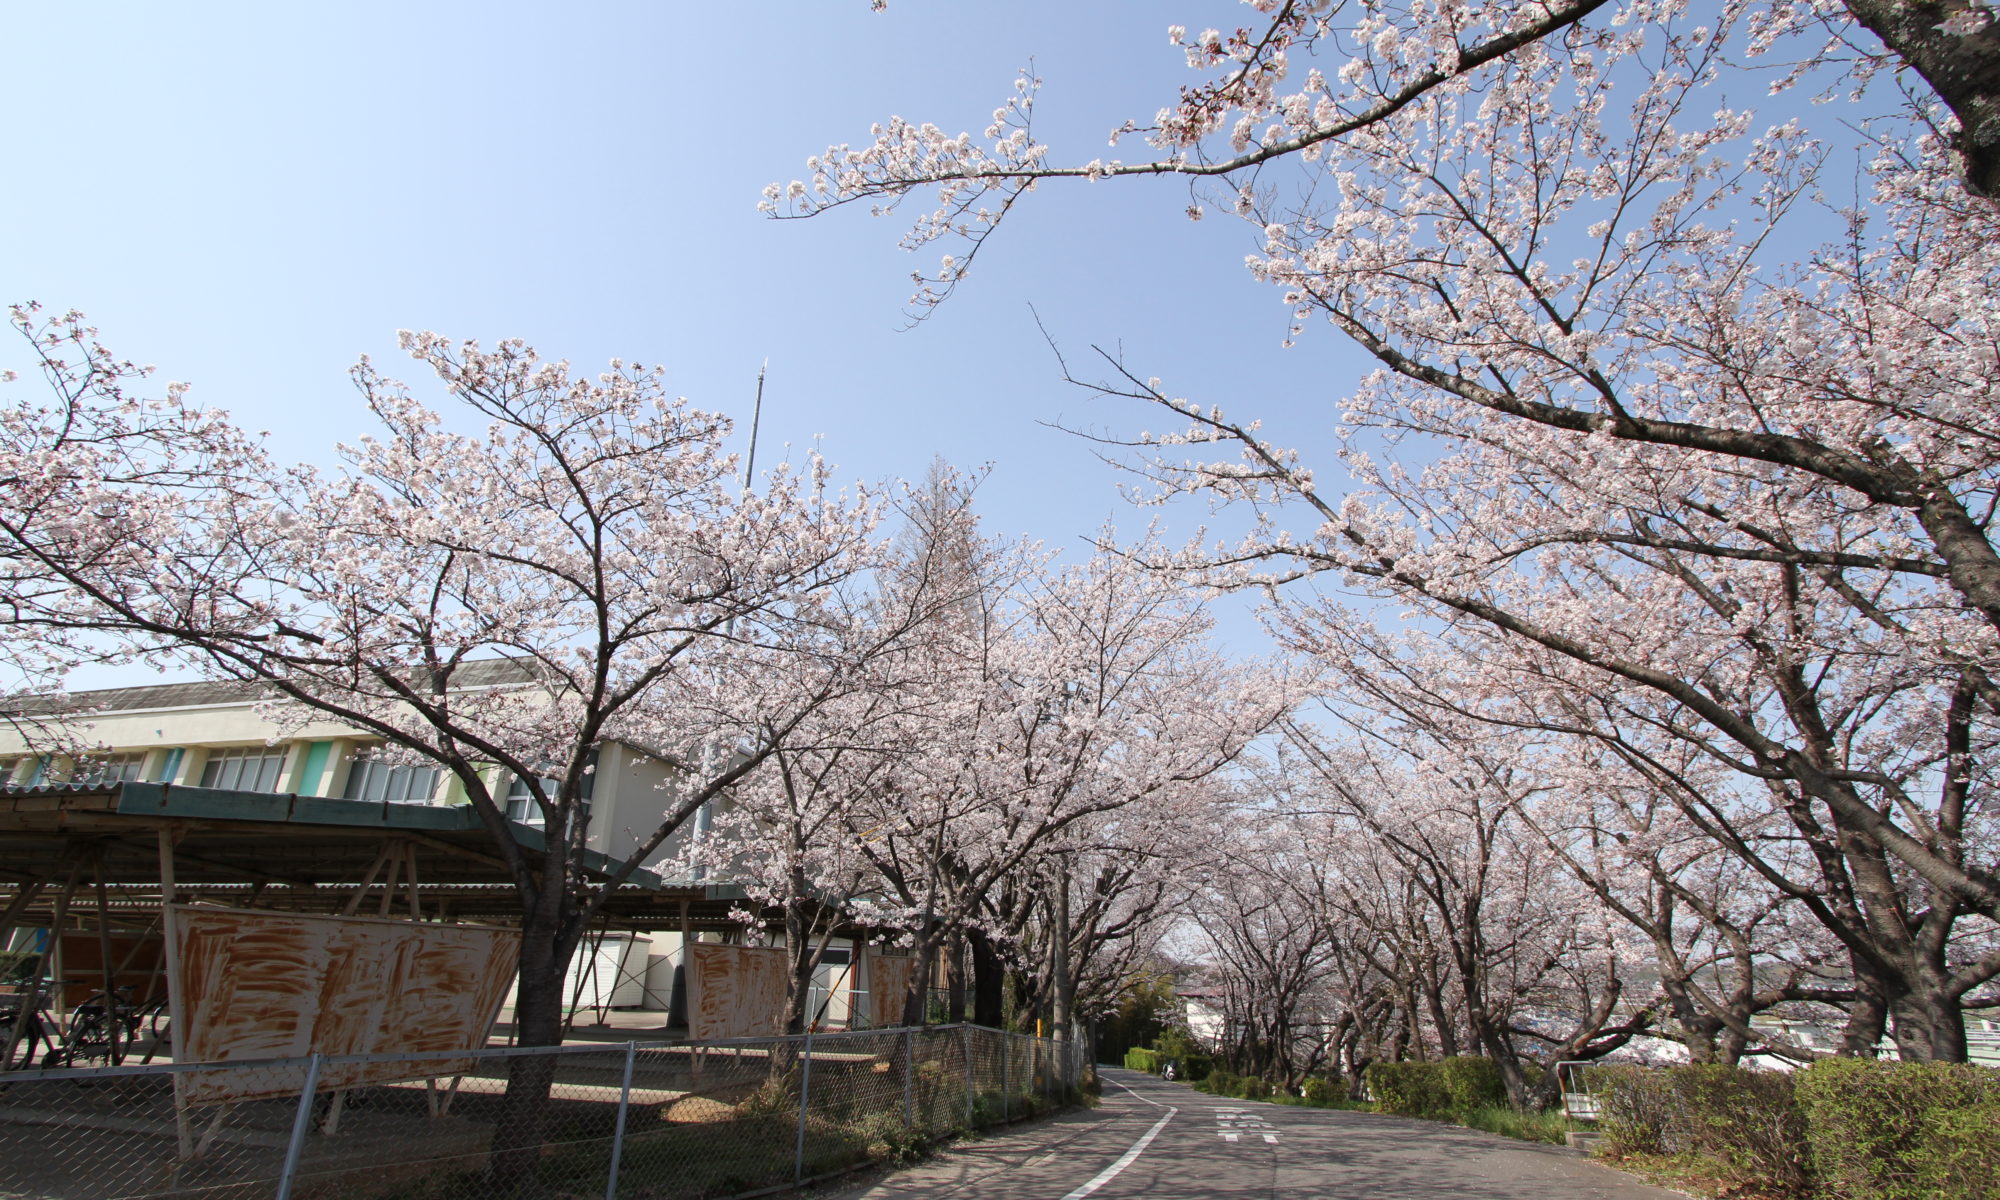 阿久比町 桜坂 19知多半島桜撮影12 カメラを片手に知多半島